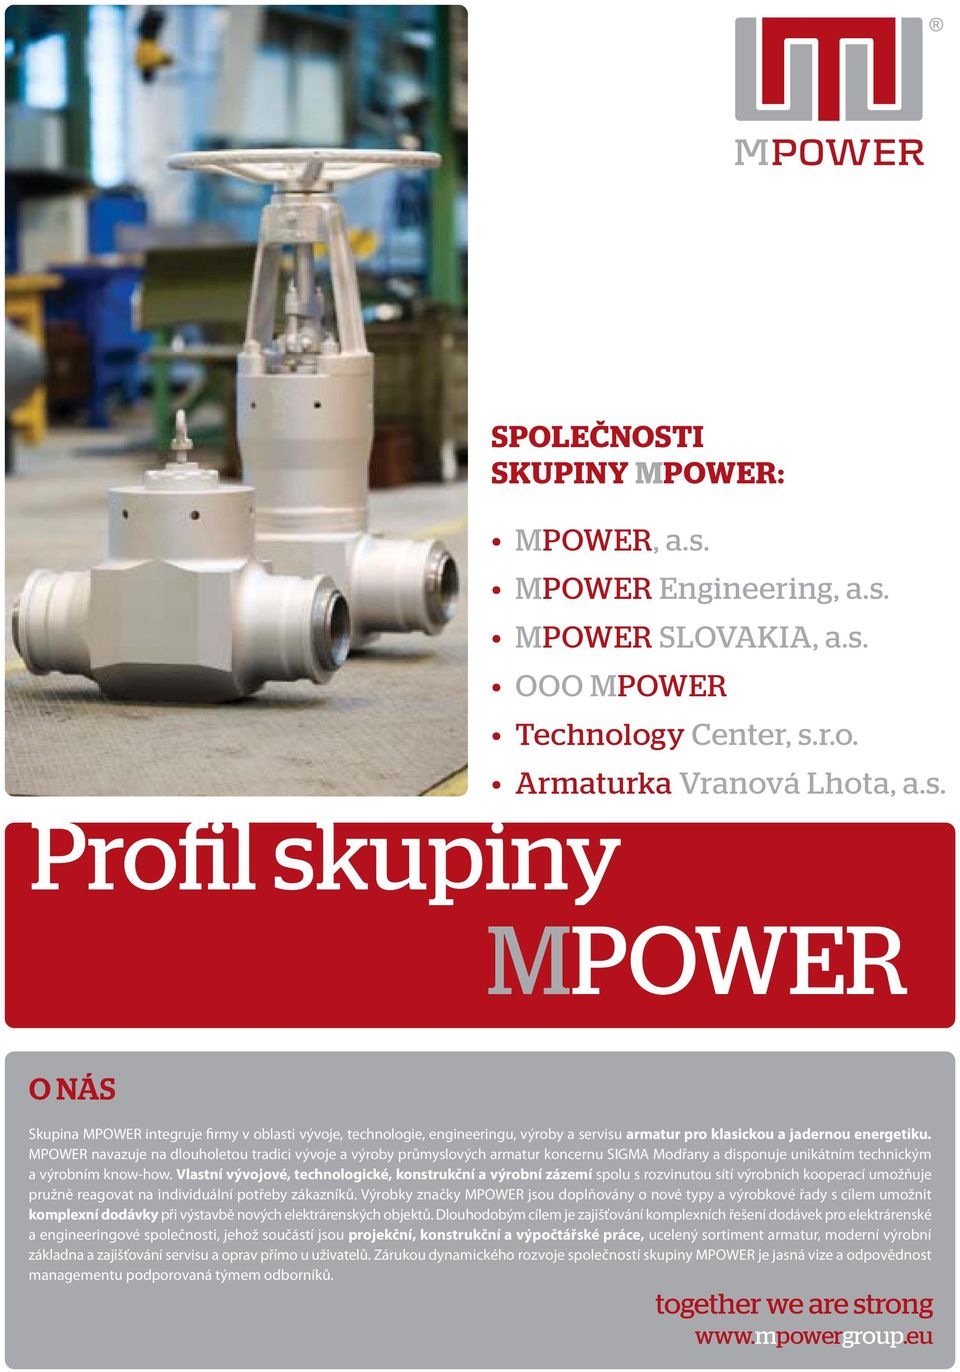 MPOWER navazuje na dlouholetou tradici vývoje a výroby průmyslových armatur koncernu SIGMA Modřany a disponuje unikátním technickým a výrobním know-how.